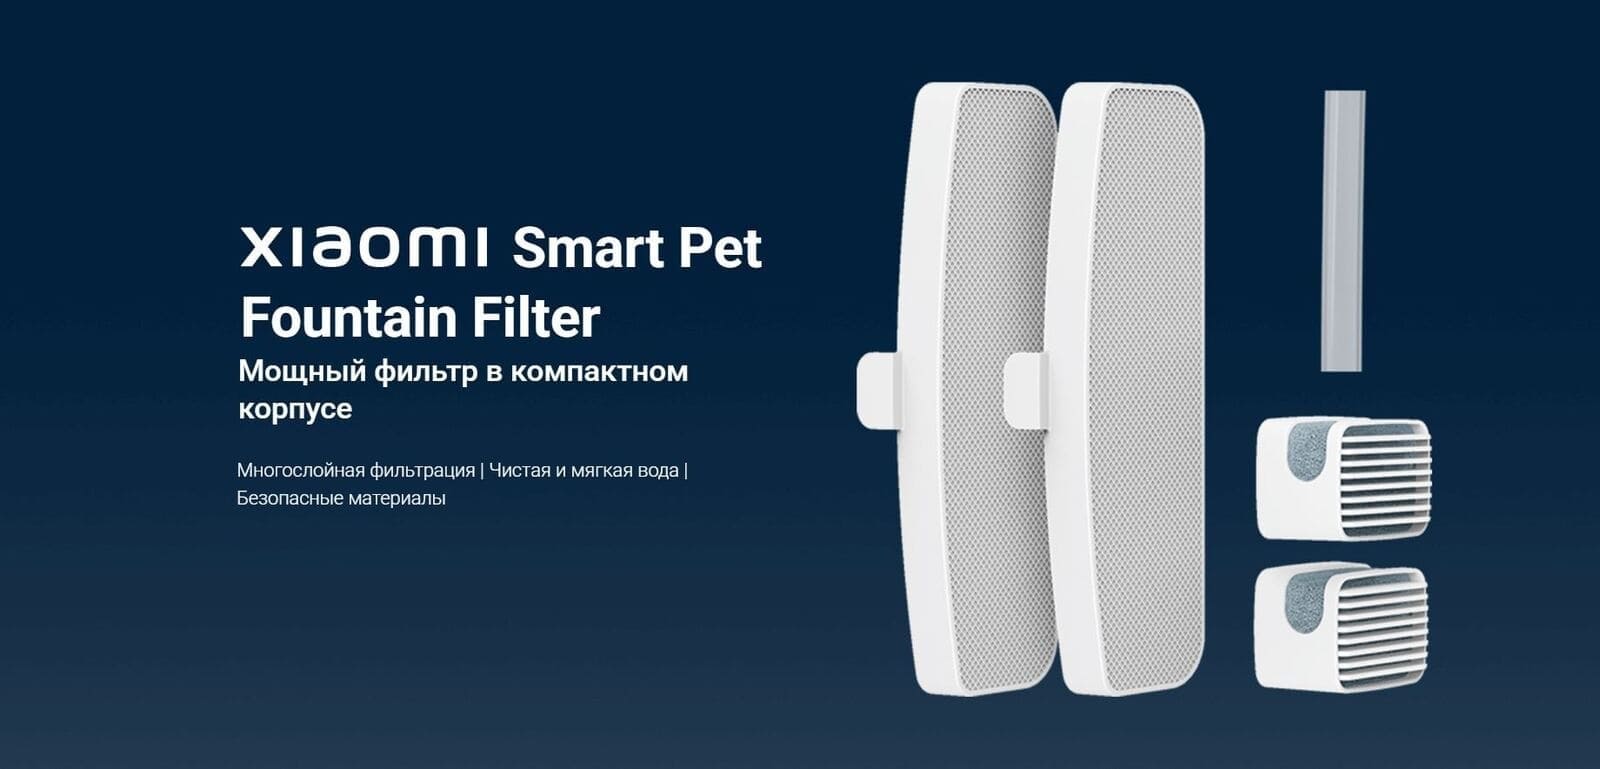 Фильтр для умной поилки Xiaomi Smart Pet Fountain Filter.